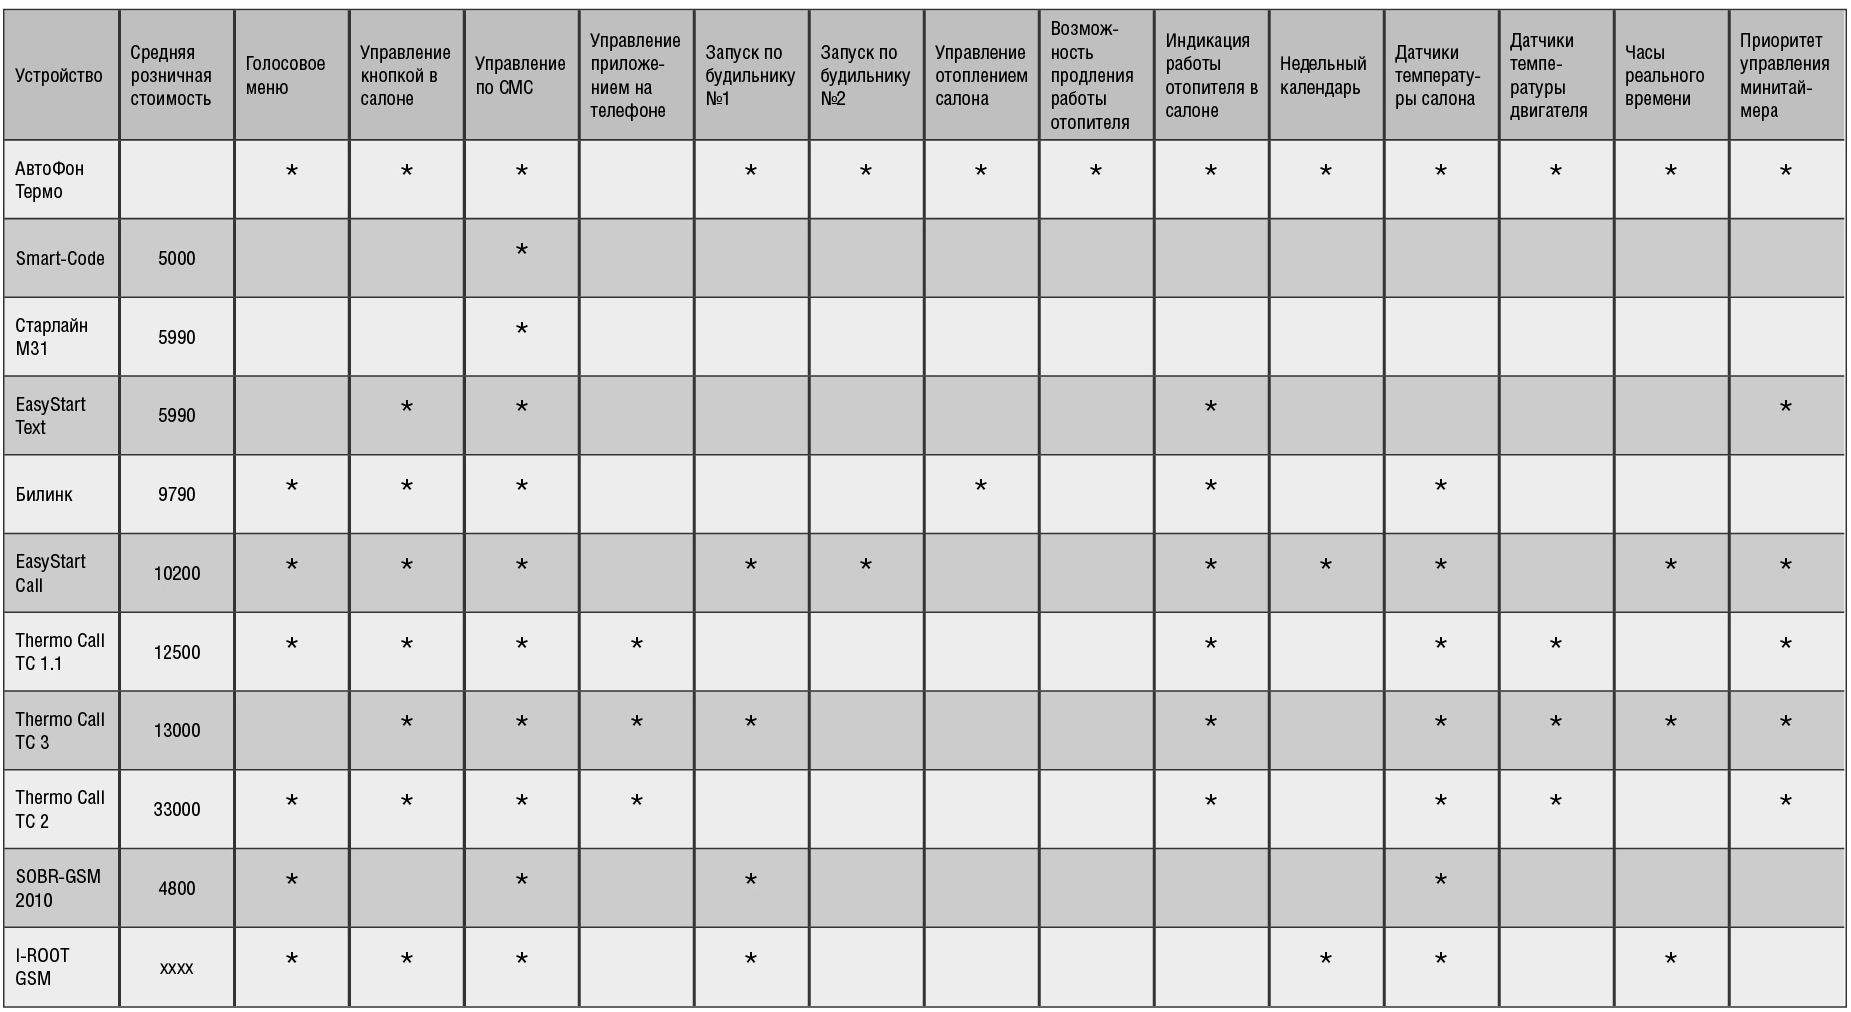 Автофон Термо - сравнительная таблица с устройствами других производителей